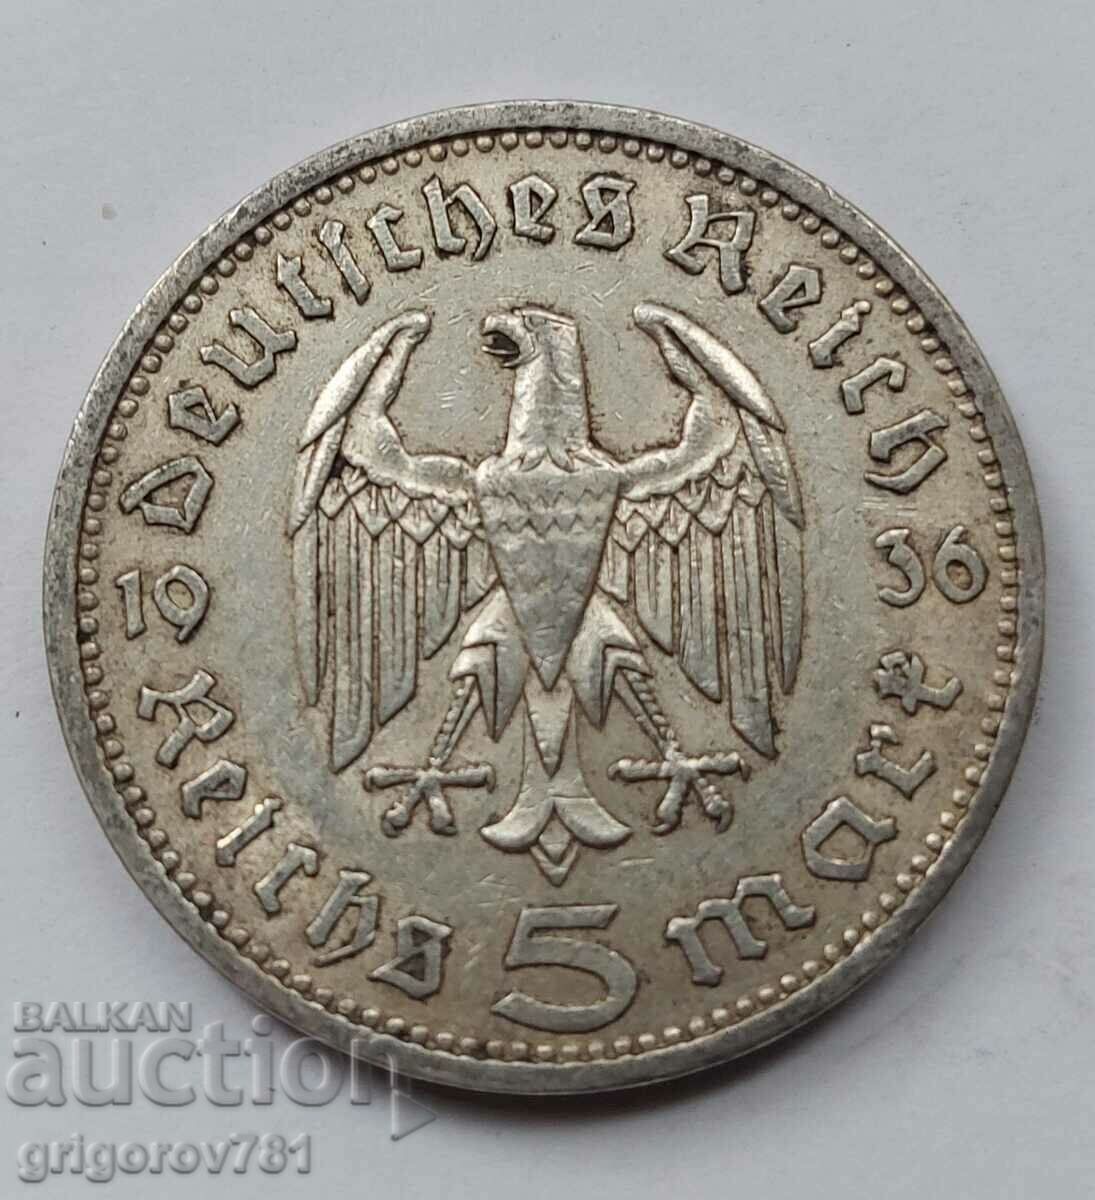 5 mărci de argint Germania 1936 A III Reich Moneda de argint #51